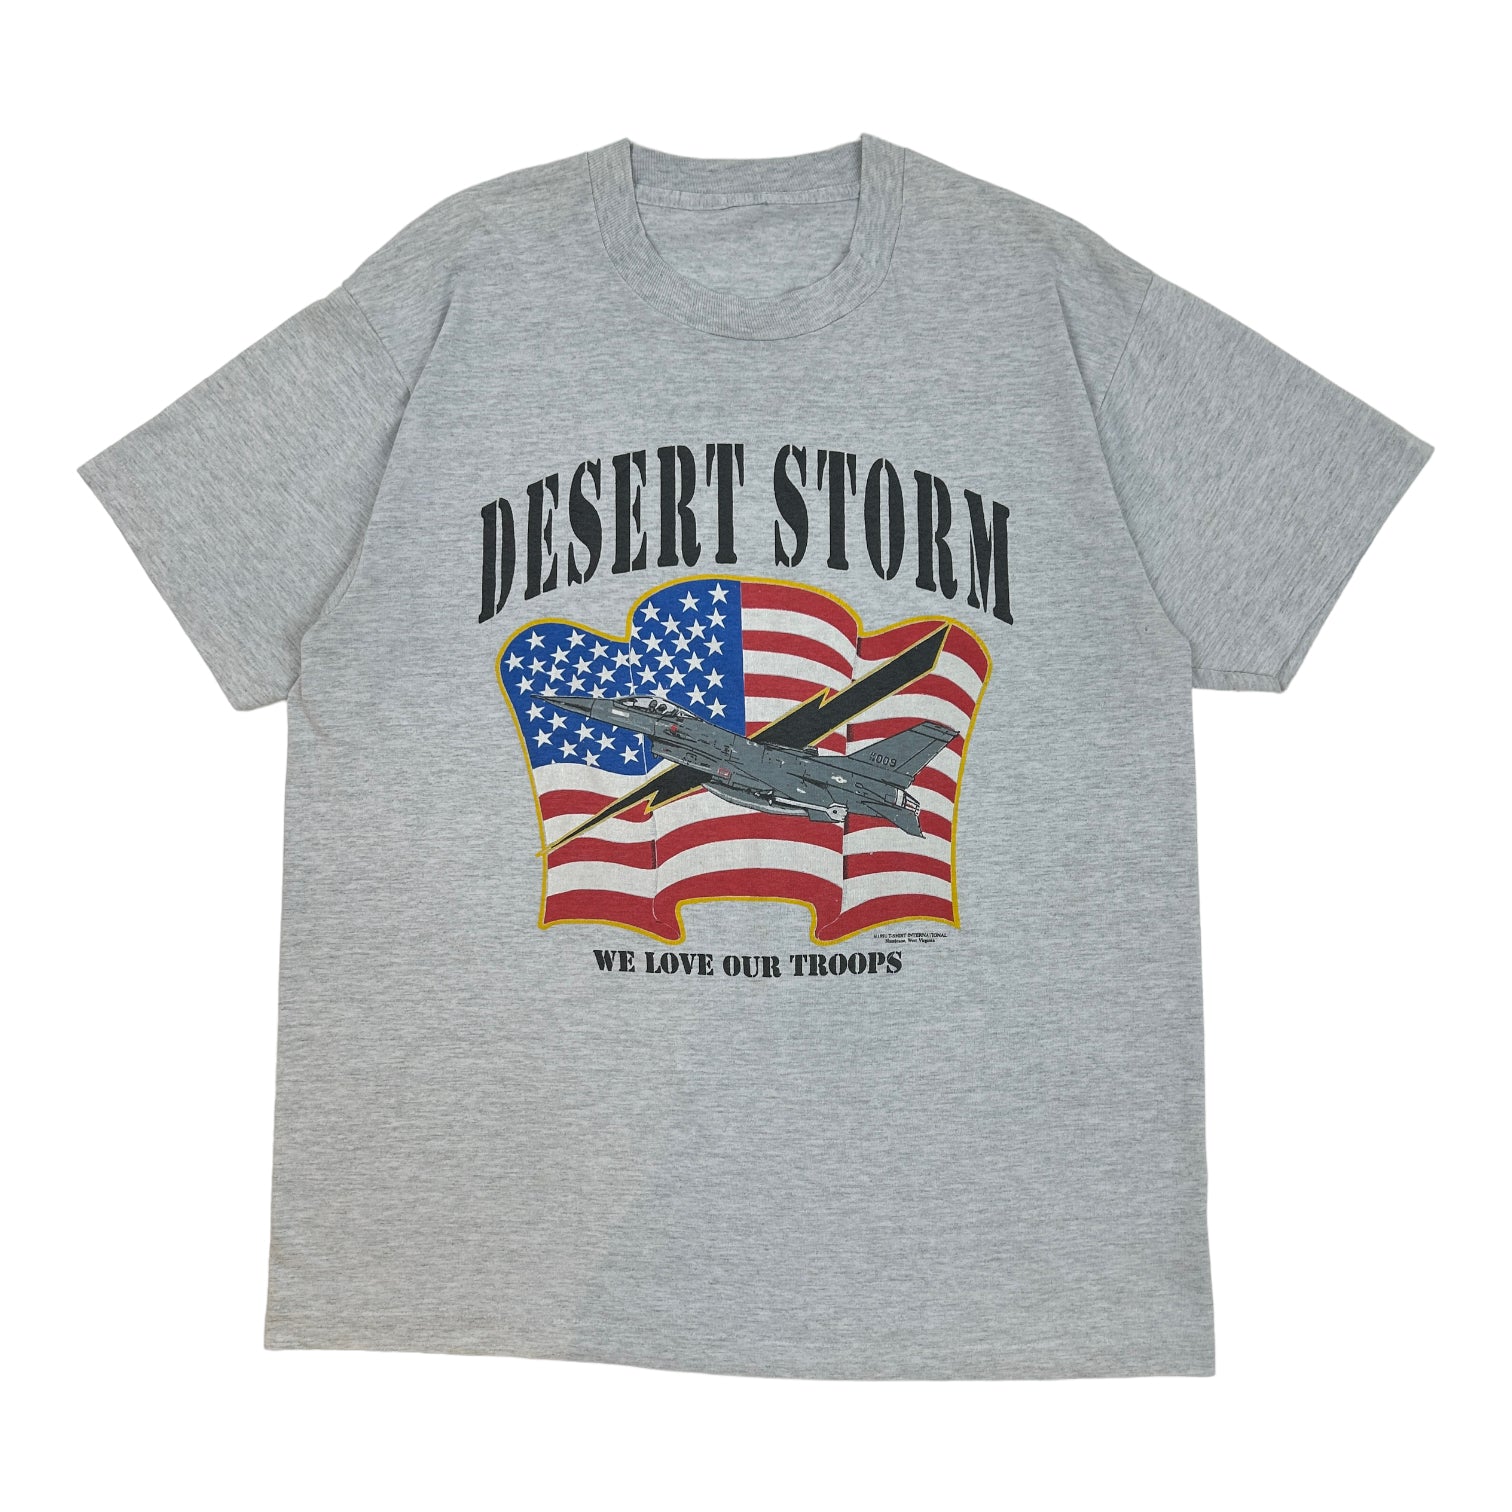 1991 Desert Storm T-Shirt - Grey